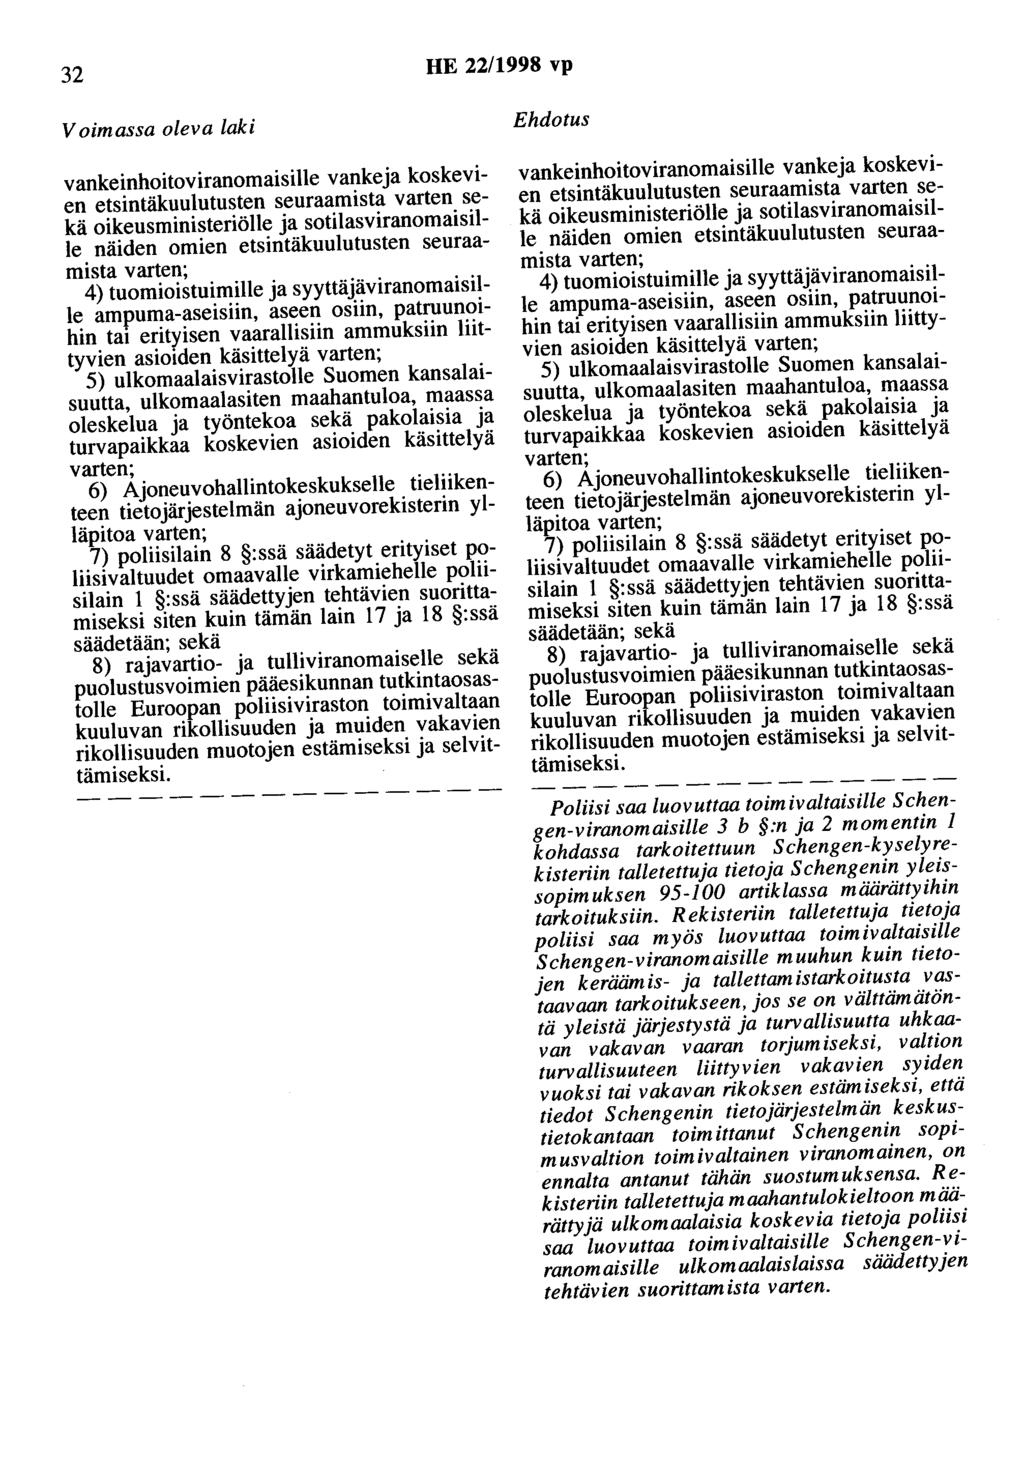 32 HE 22/1998 vp Voimassa oleva laki vankeinhoitoviranomaisille vankeja koskevien etsintäkuulutusten seuraamista varten sekä oikeusministeriölle ja sotilasviranomaisille näiden omien